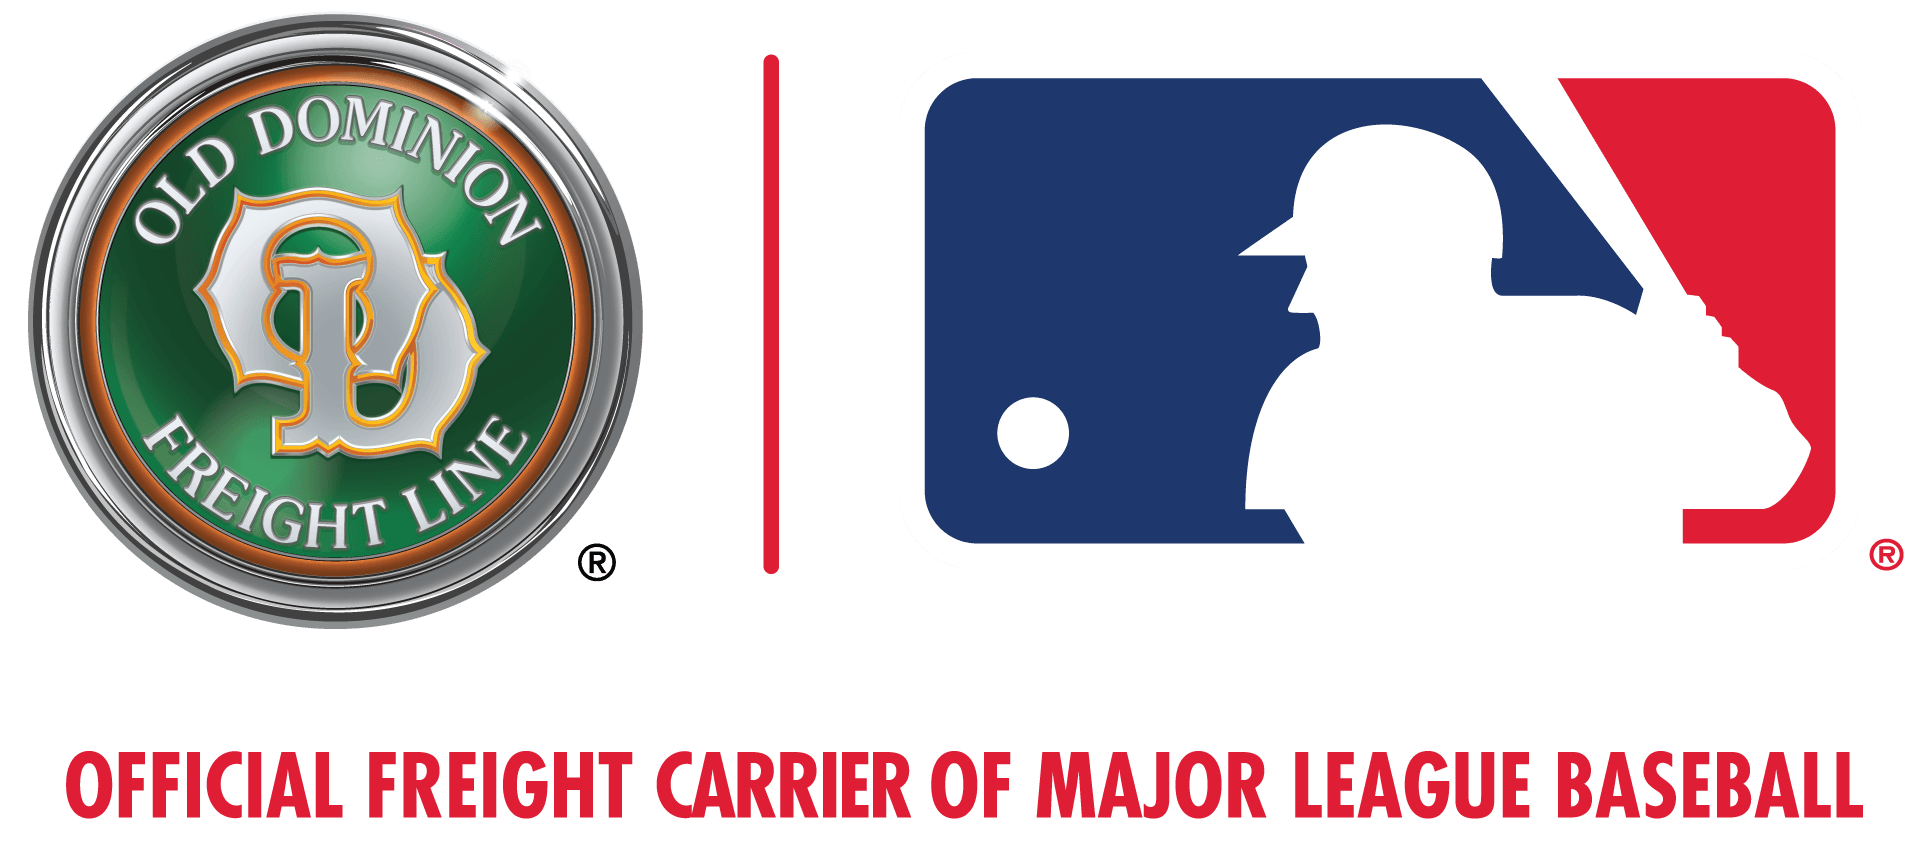 Od Logo - Major League Baseball